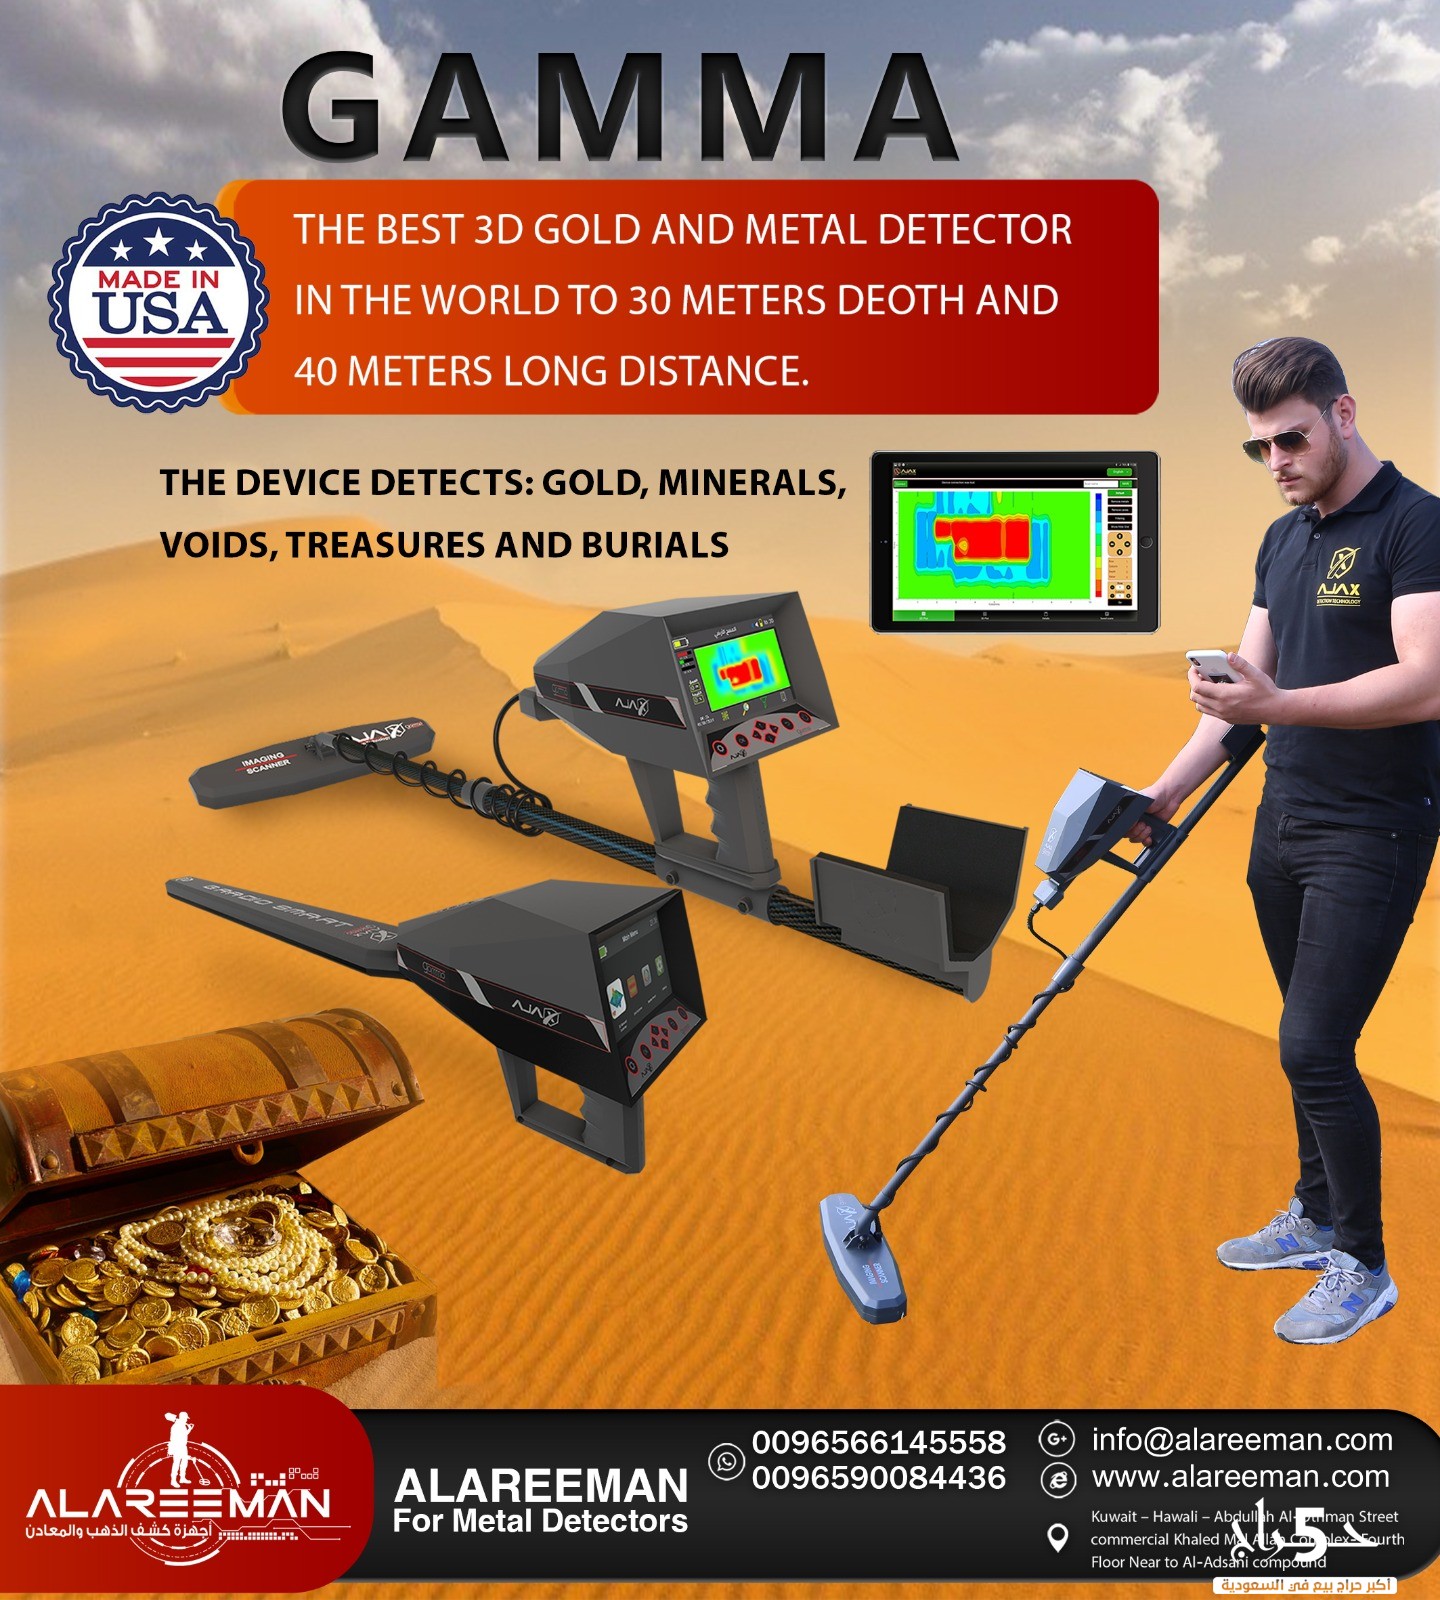 اجاكس غاما الامريكي_جهاز كشف الذهب والكنوز AJAX GAMMA US 2021